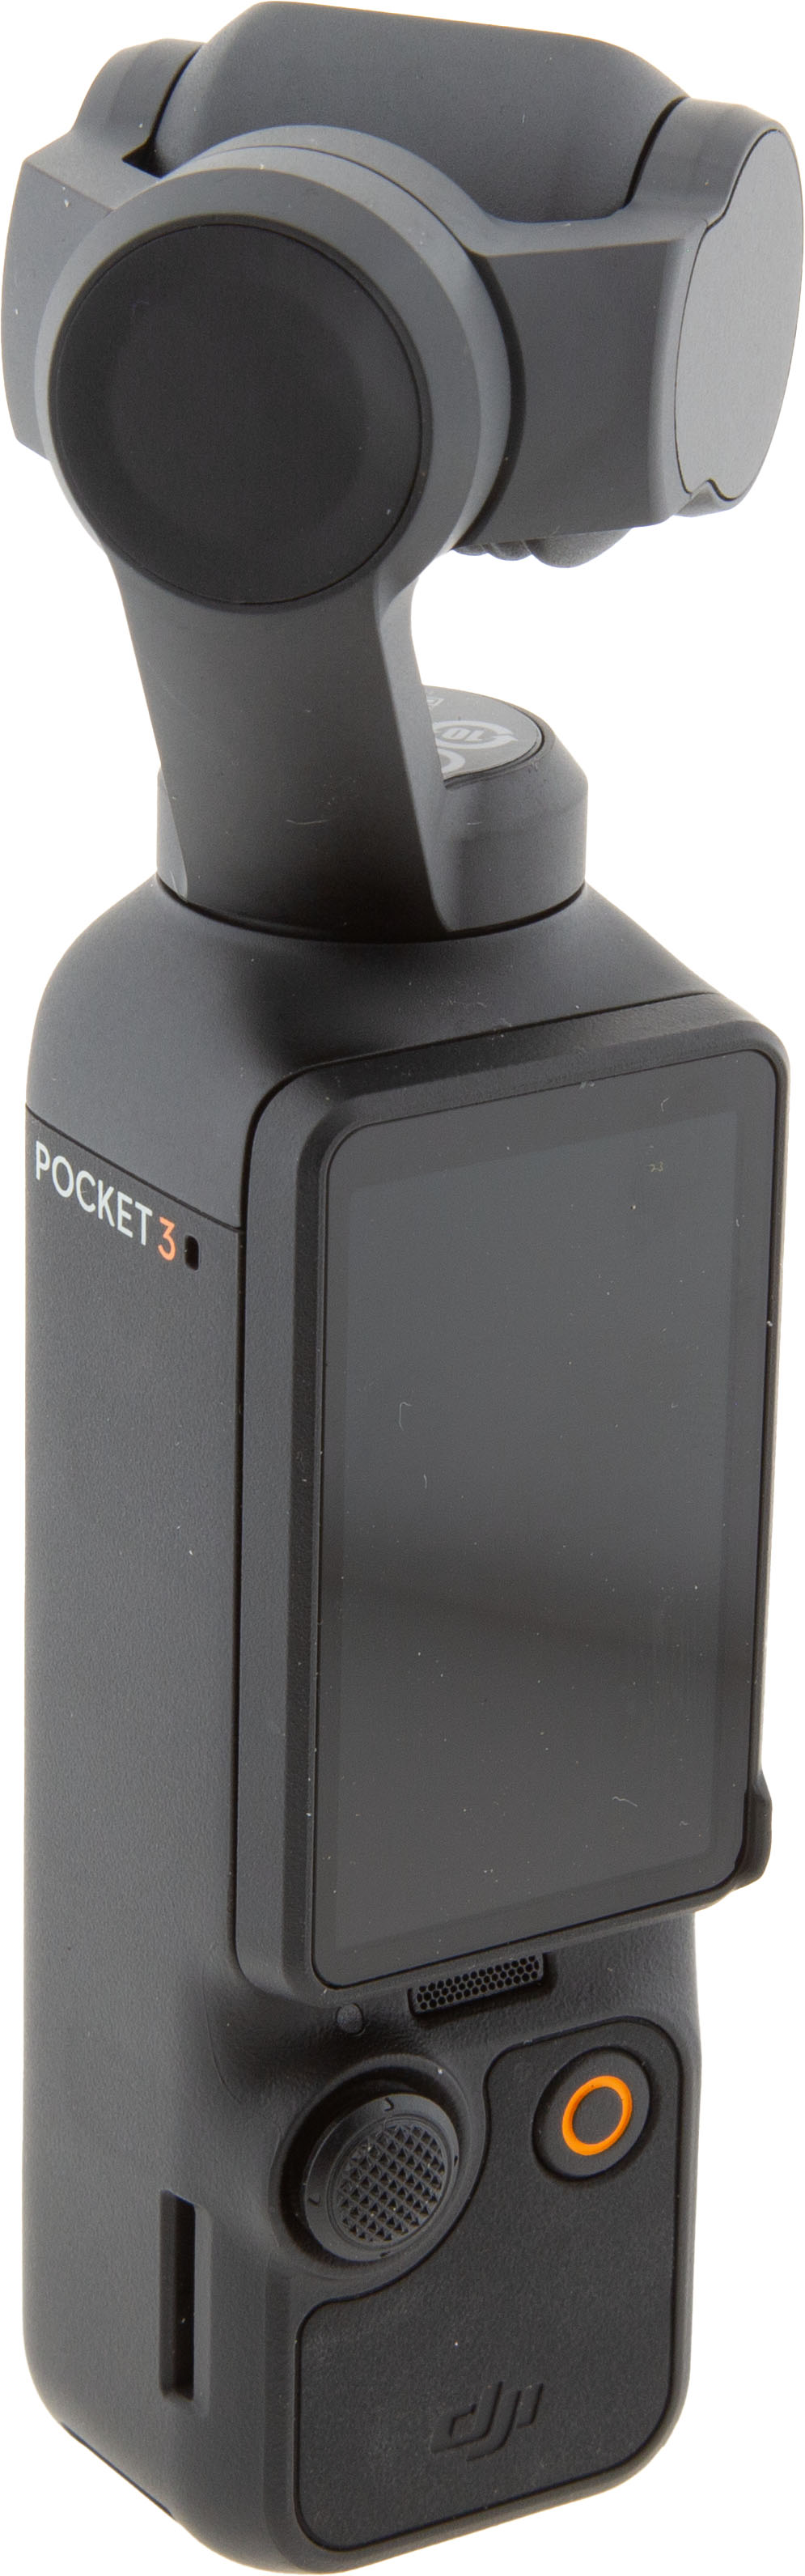 Pocket 3 Gimbal Kamera